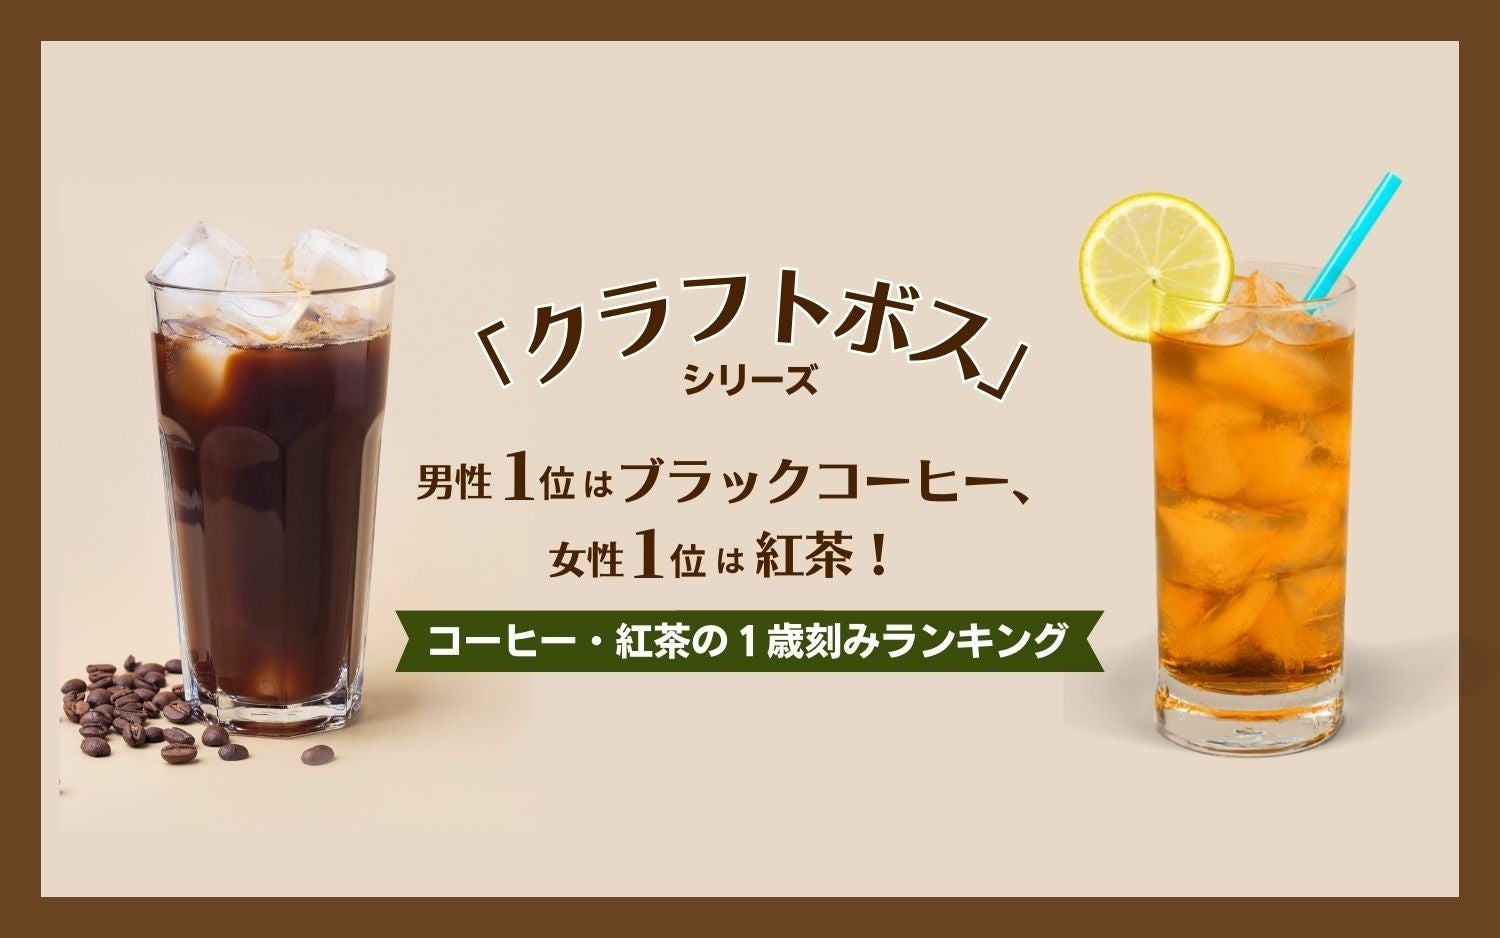 日本全国100銘柄以上のクラフトビールを楽しめるDREAMBEER　季節限定＂秋の果実＂ビール4銘柄を発売！～季節限定フルーツビールで秋の味覚を楽しもう～